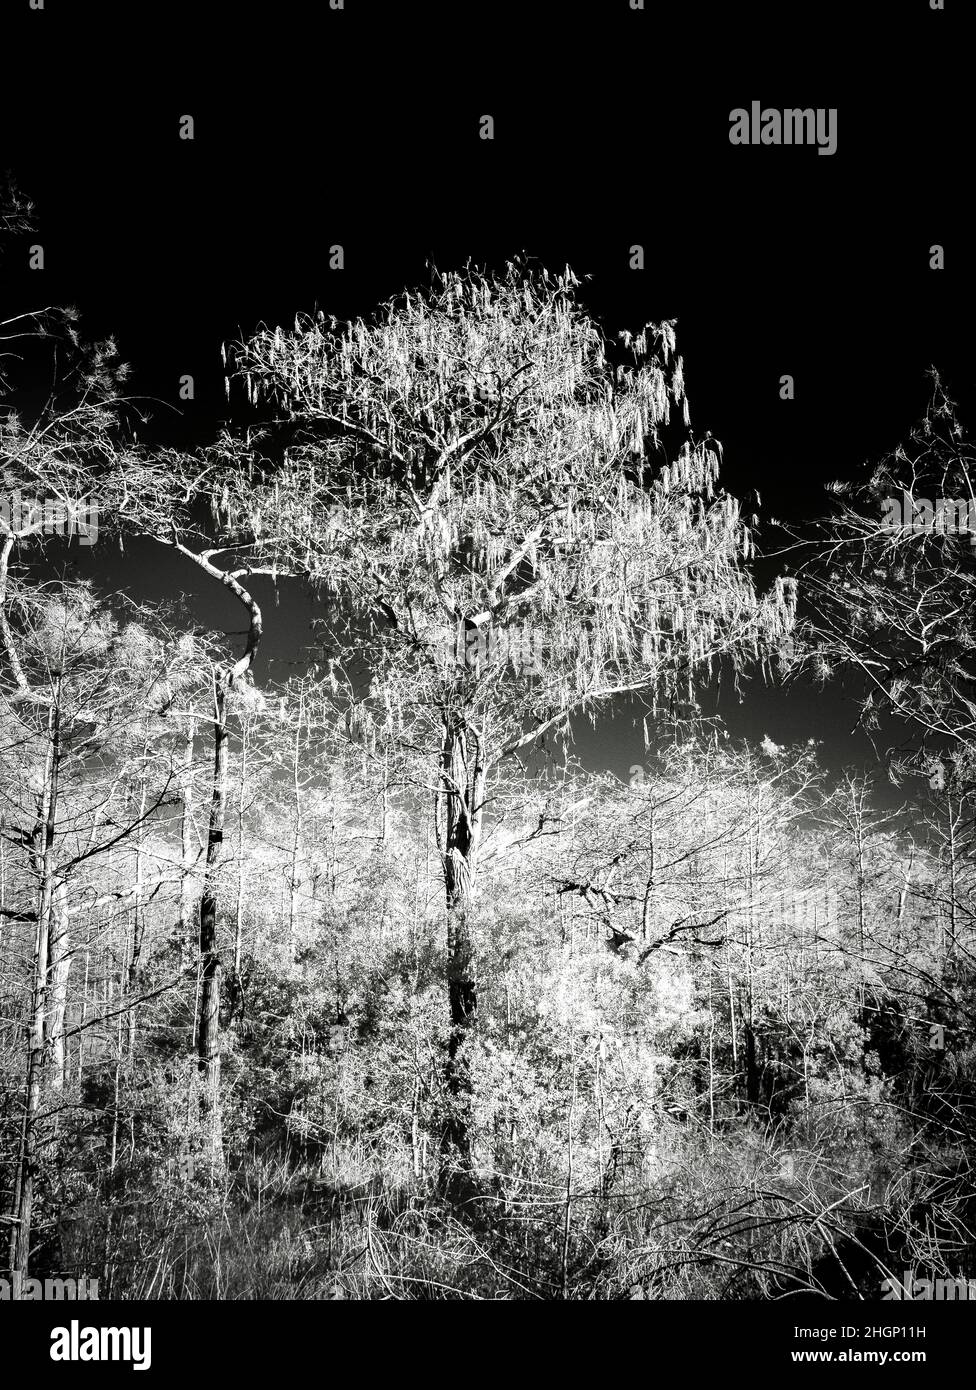 Image rouge infrarouge dans la zone Kirby Storter Roadside Park de la réserve nationale Big Cypress en Floride aux États-Unis Banque D'Images